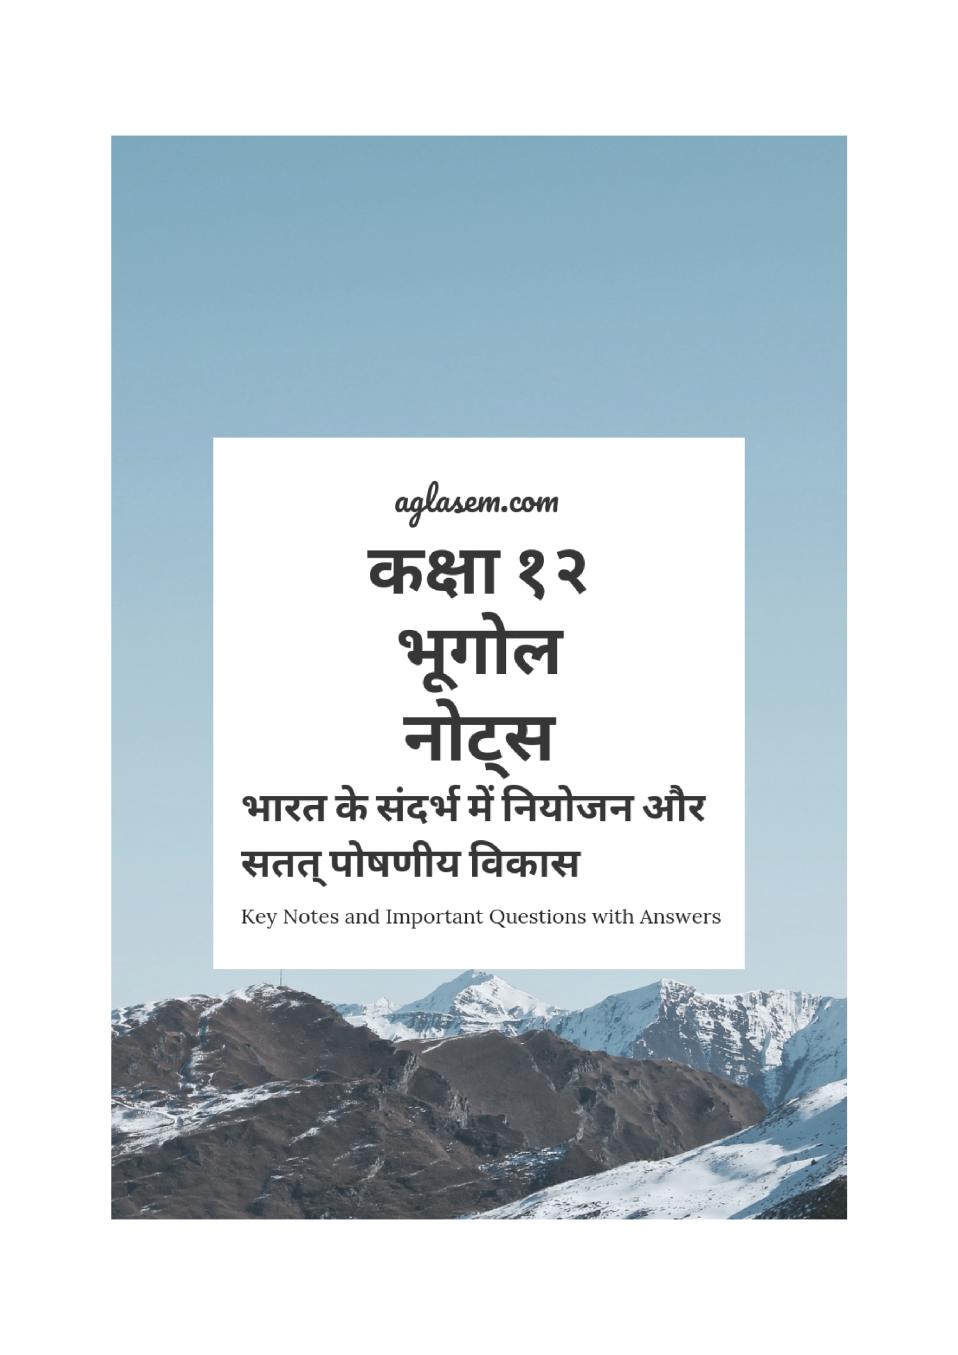 कक्षा 12 भूगोल के नोट्स - भारत के सन्दर्भ में नियोजन और सतत पोषणीय विकास - Page 1